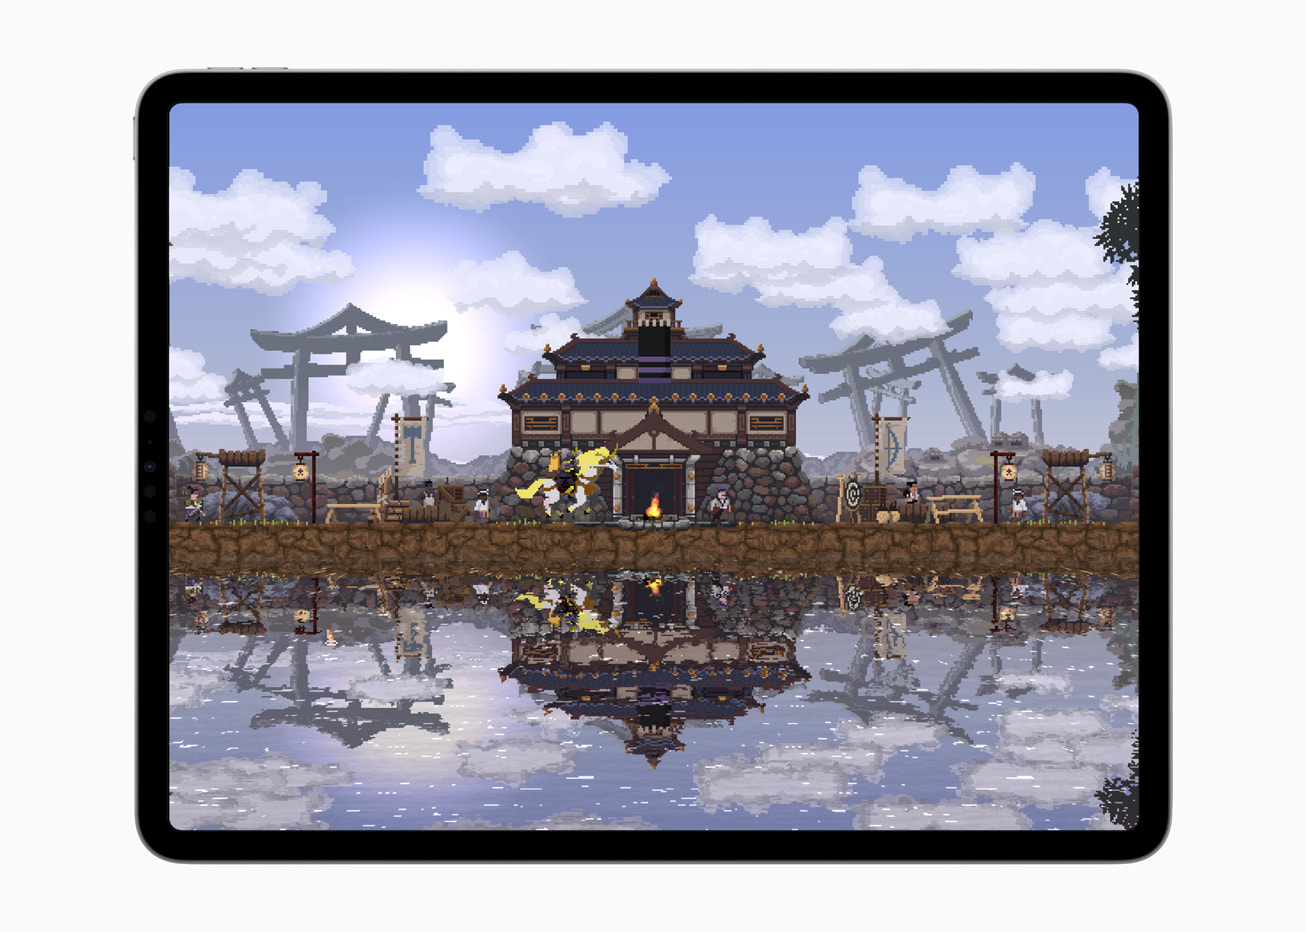 На iPad Pro, все още от играта Kingdom Two Crowns показва къща до водно тяло